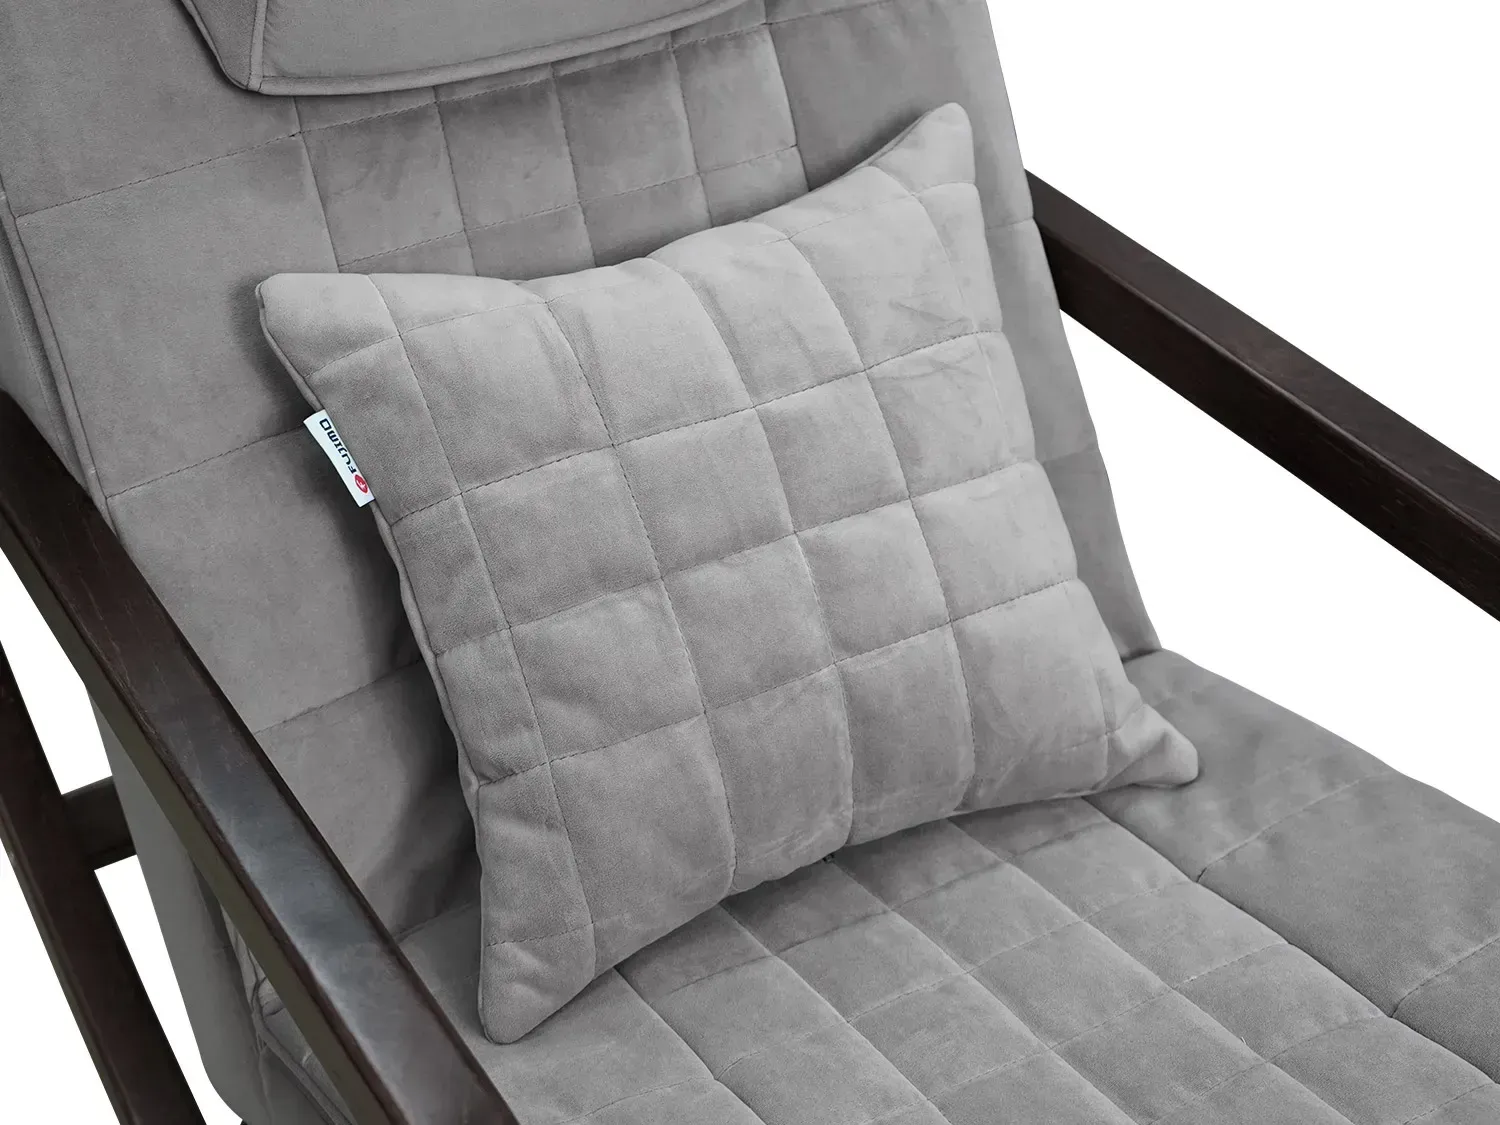 Массажное кресло качалка FUJIMO SOHO Plus F2009 Серый (TONY13)